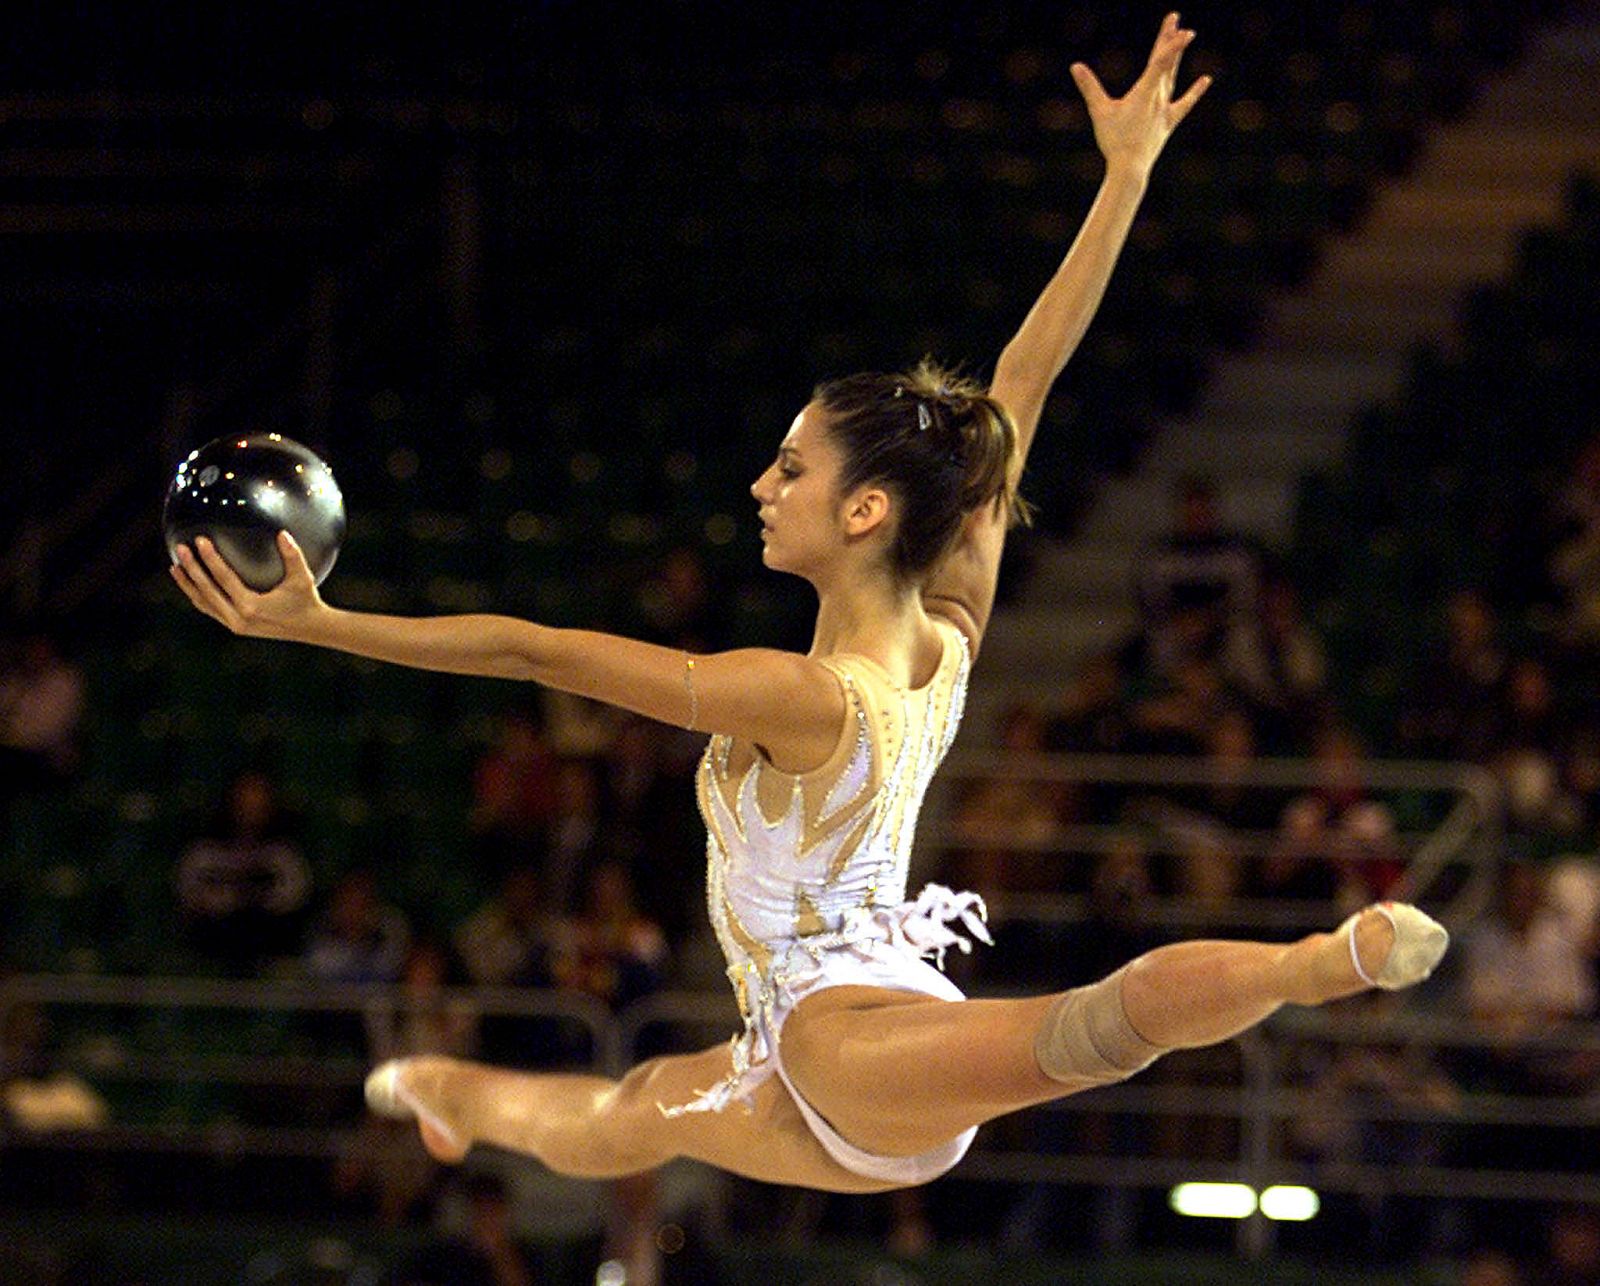 La gimnasta española reconoce que sus aspiraciones a medallas son escasas en estos Juegos.